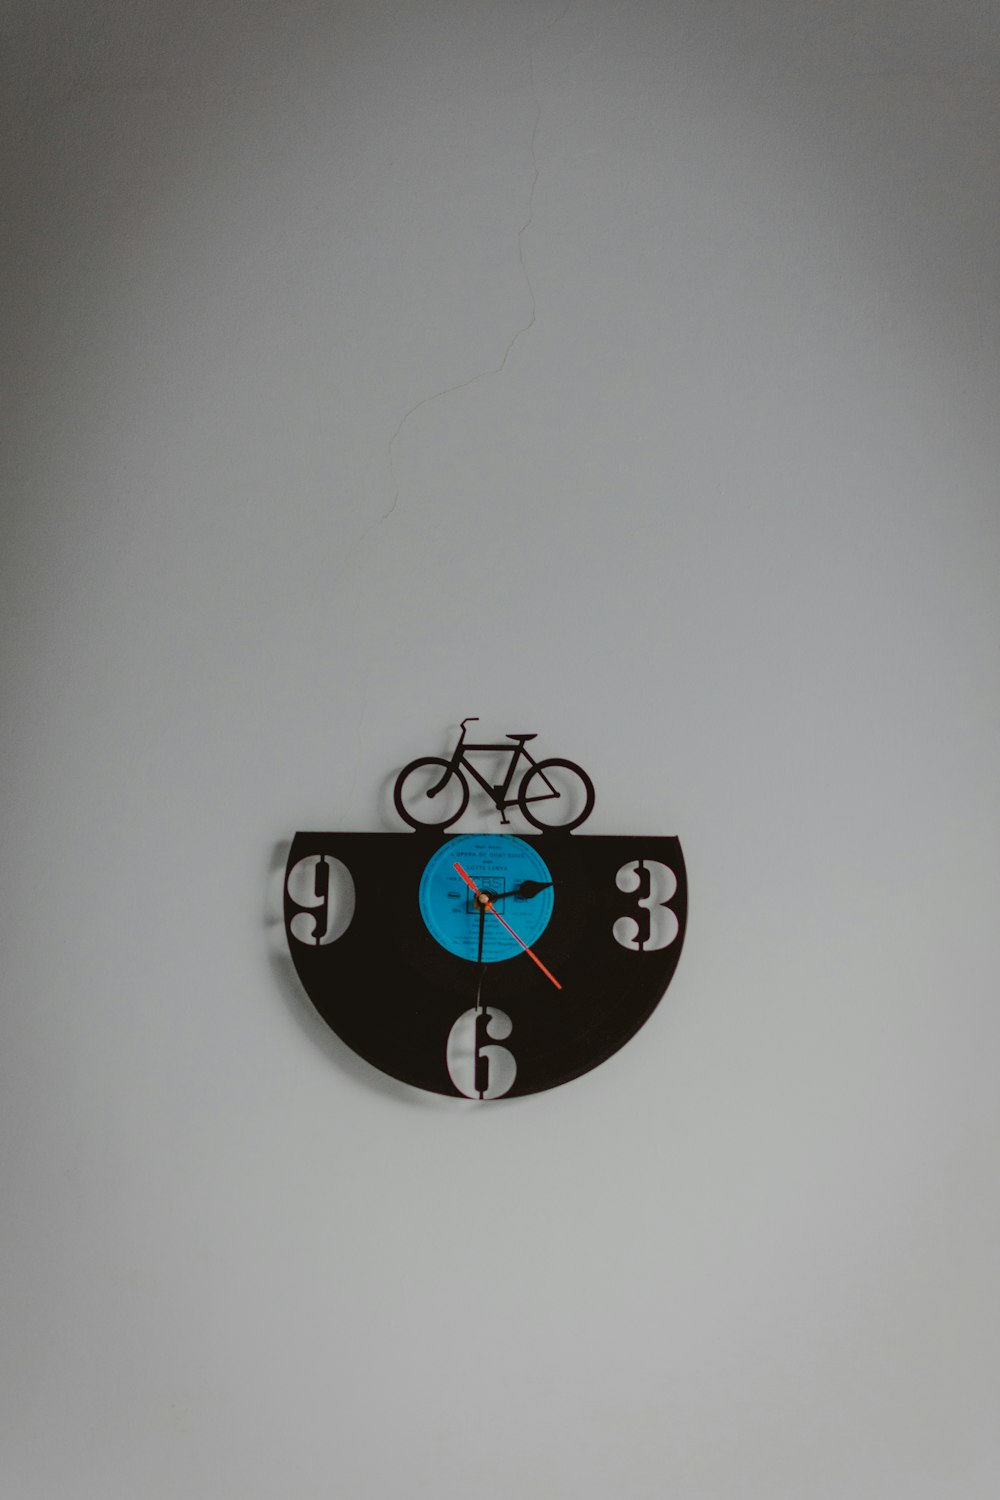 Orologio da parete analogico a tema bici nero e blu che mostra l'ora 3:30